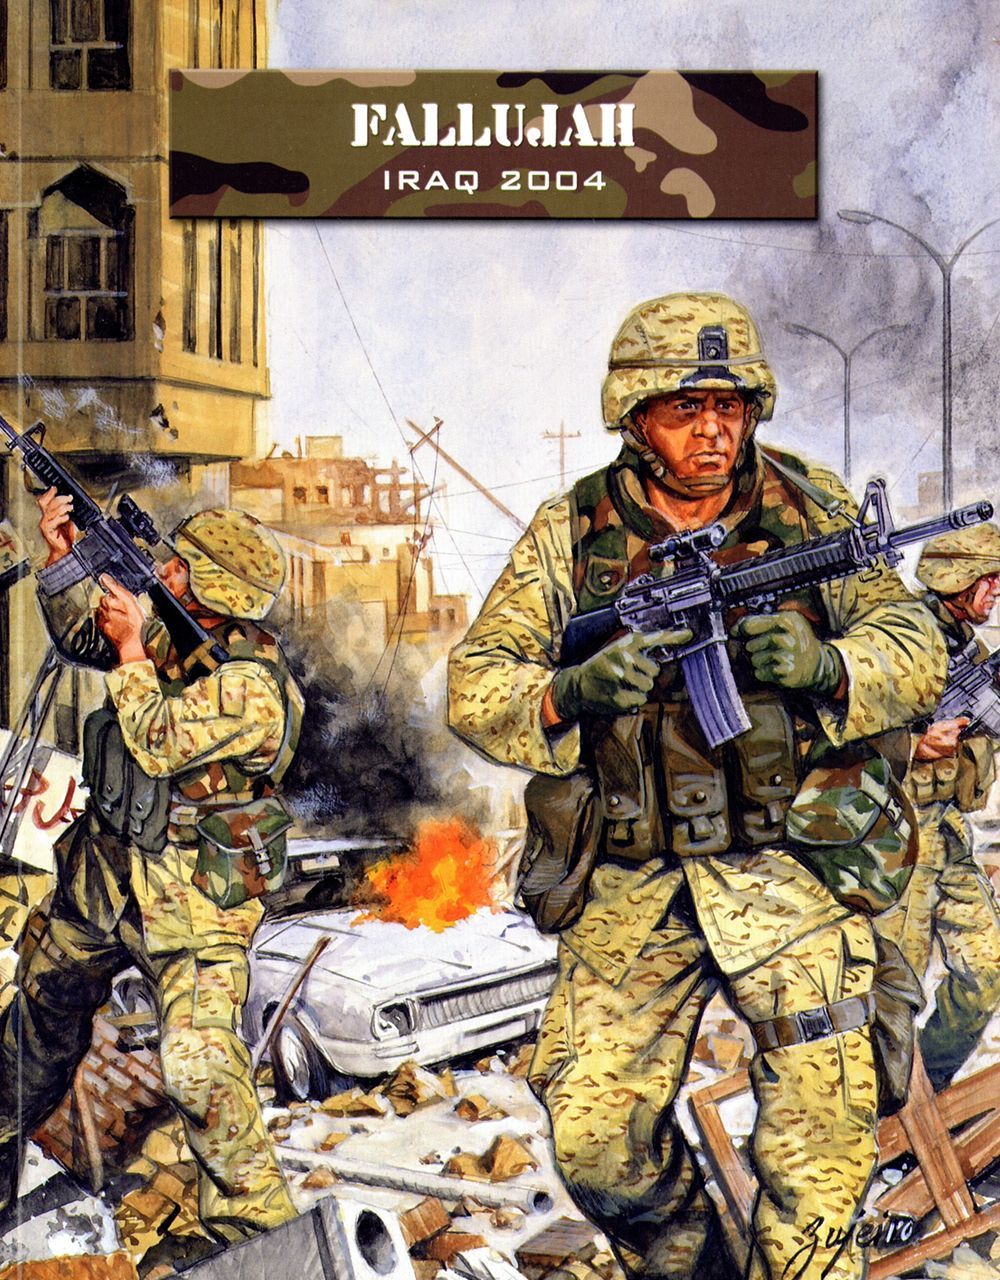 Force on Force: Fallujah – Iraq 2004